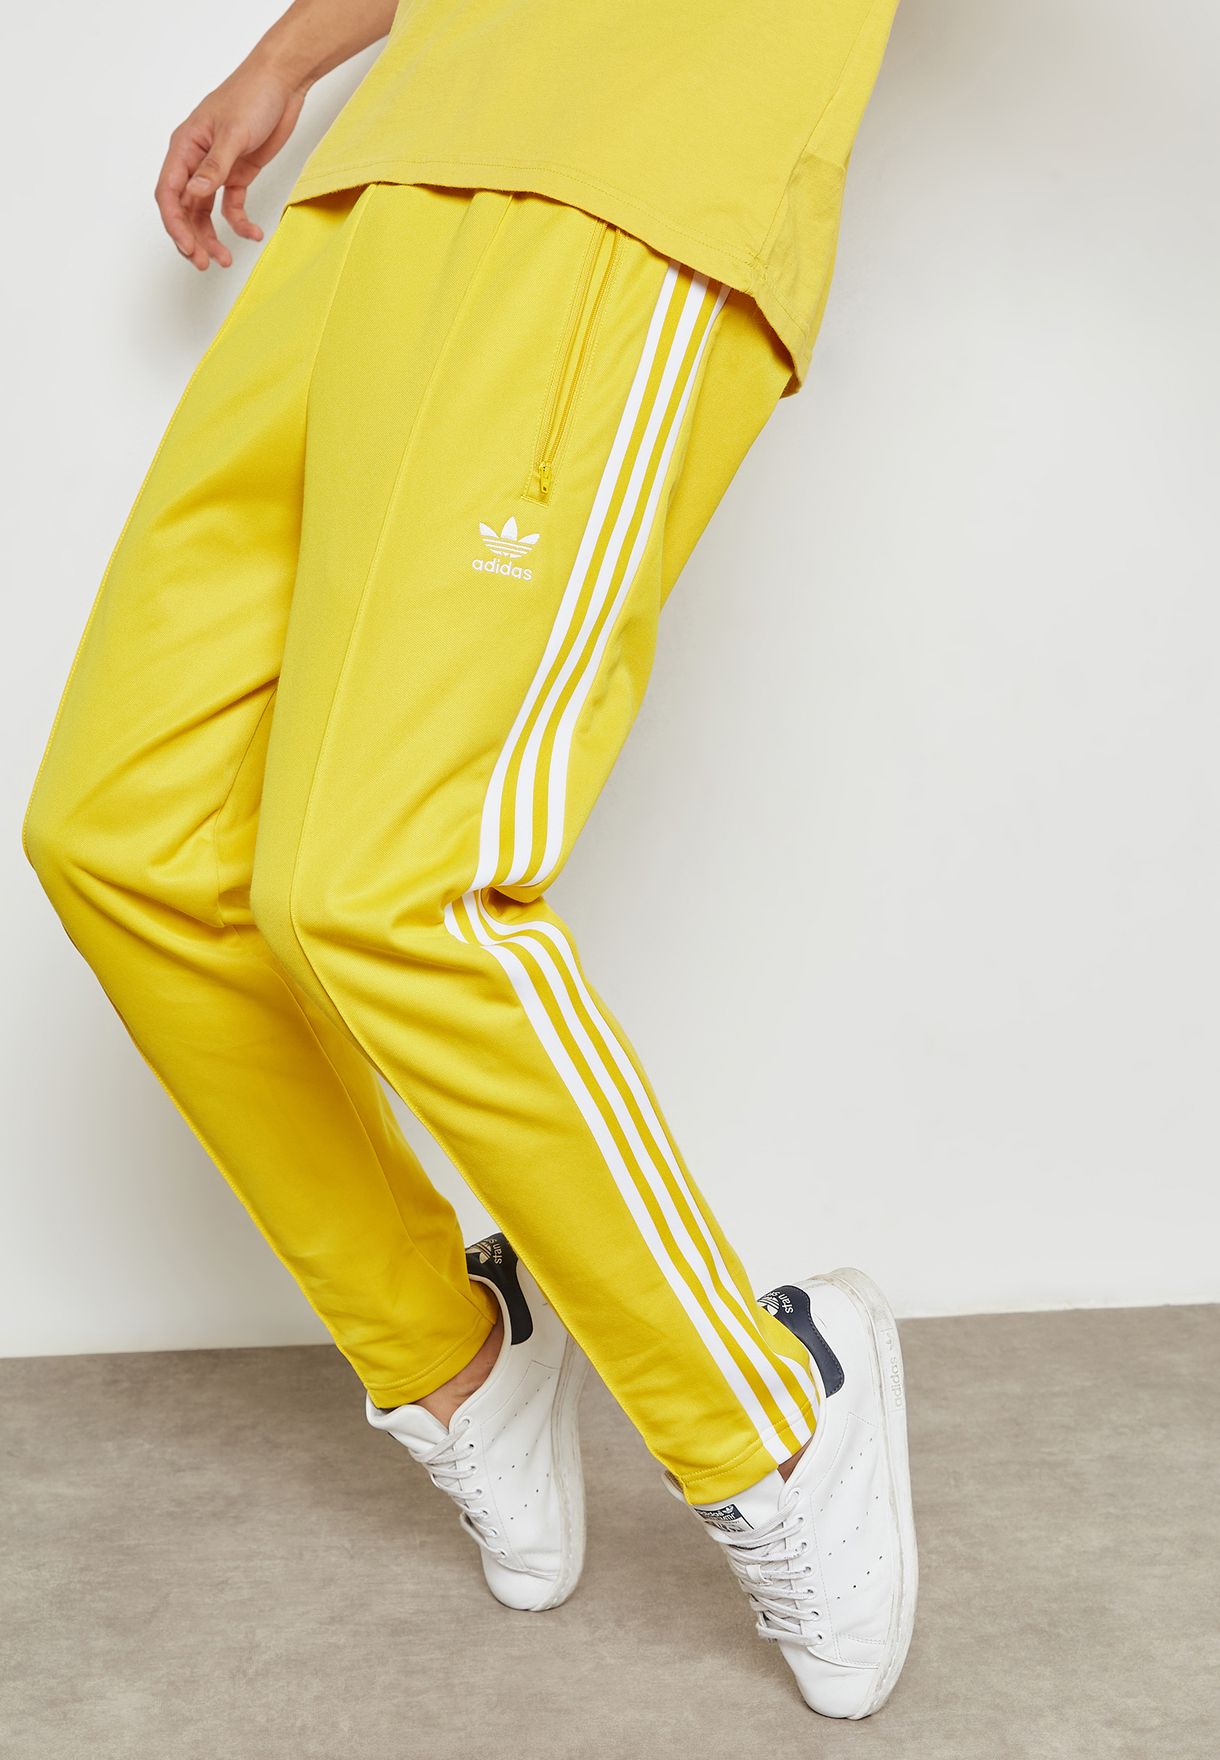 yellow adidas pants mens